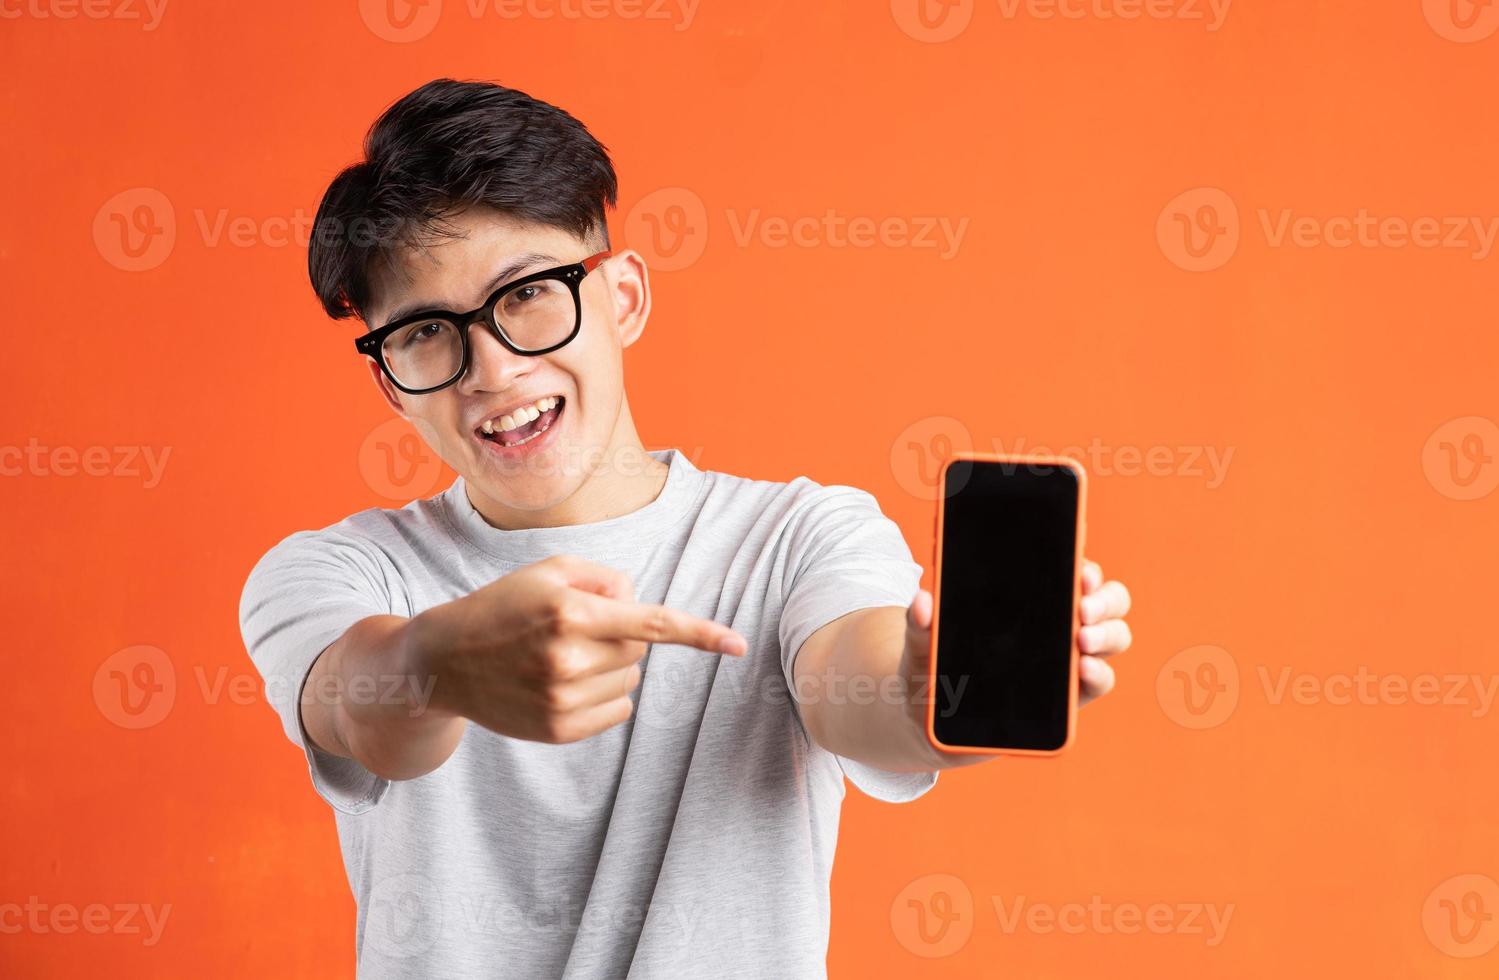 Retrato de joven asiático apuntando a la pantalla del teléfono, aislado sobre fondo naranja foto